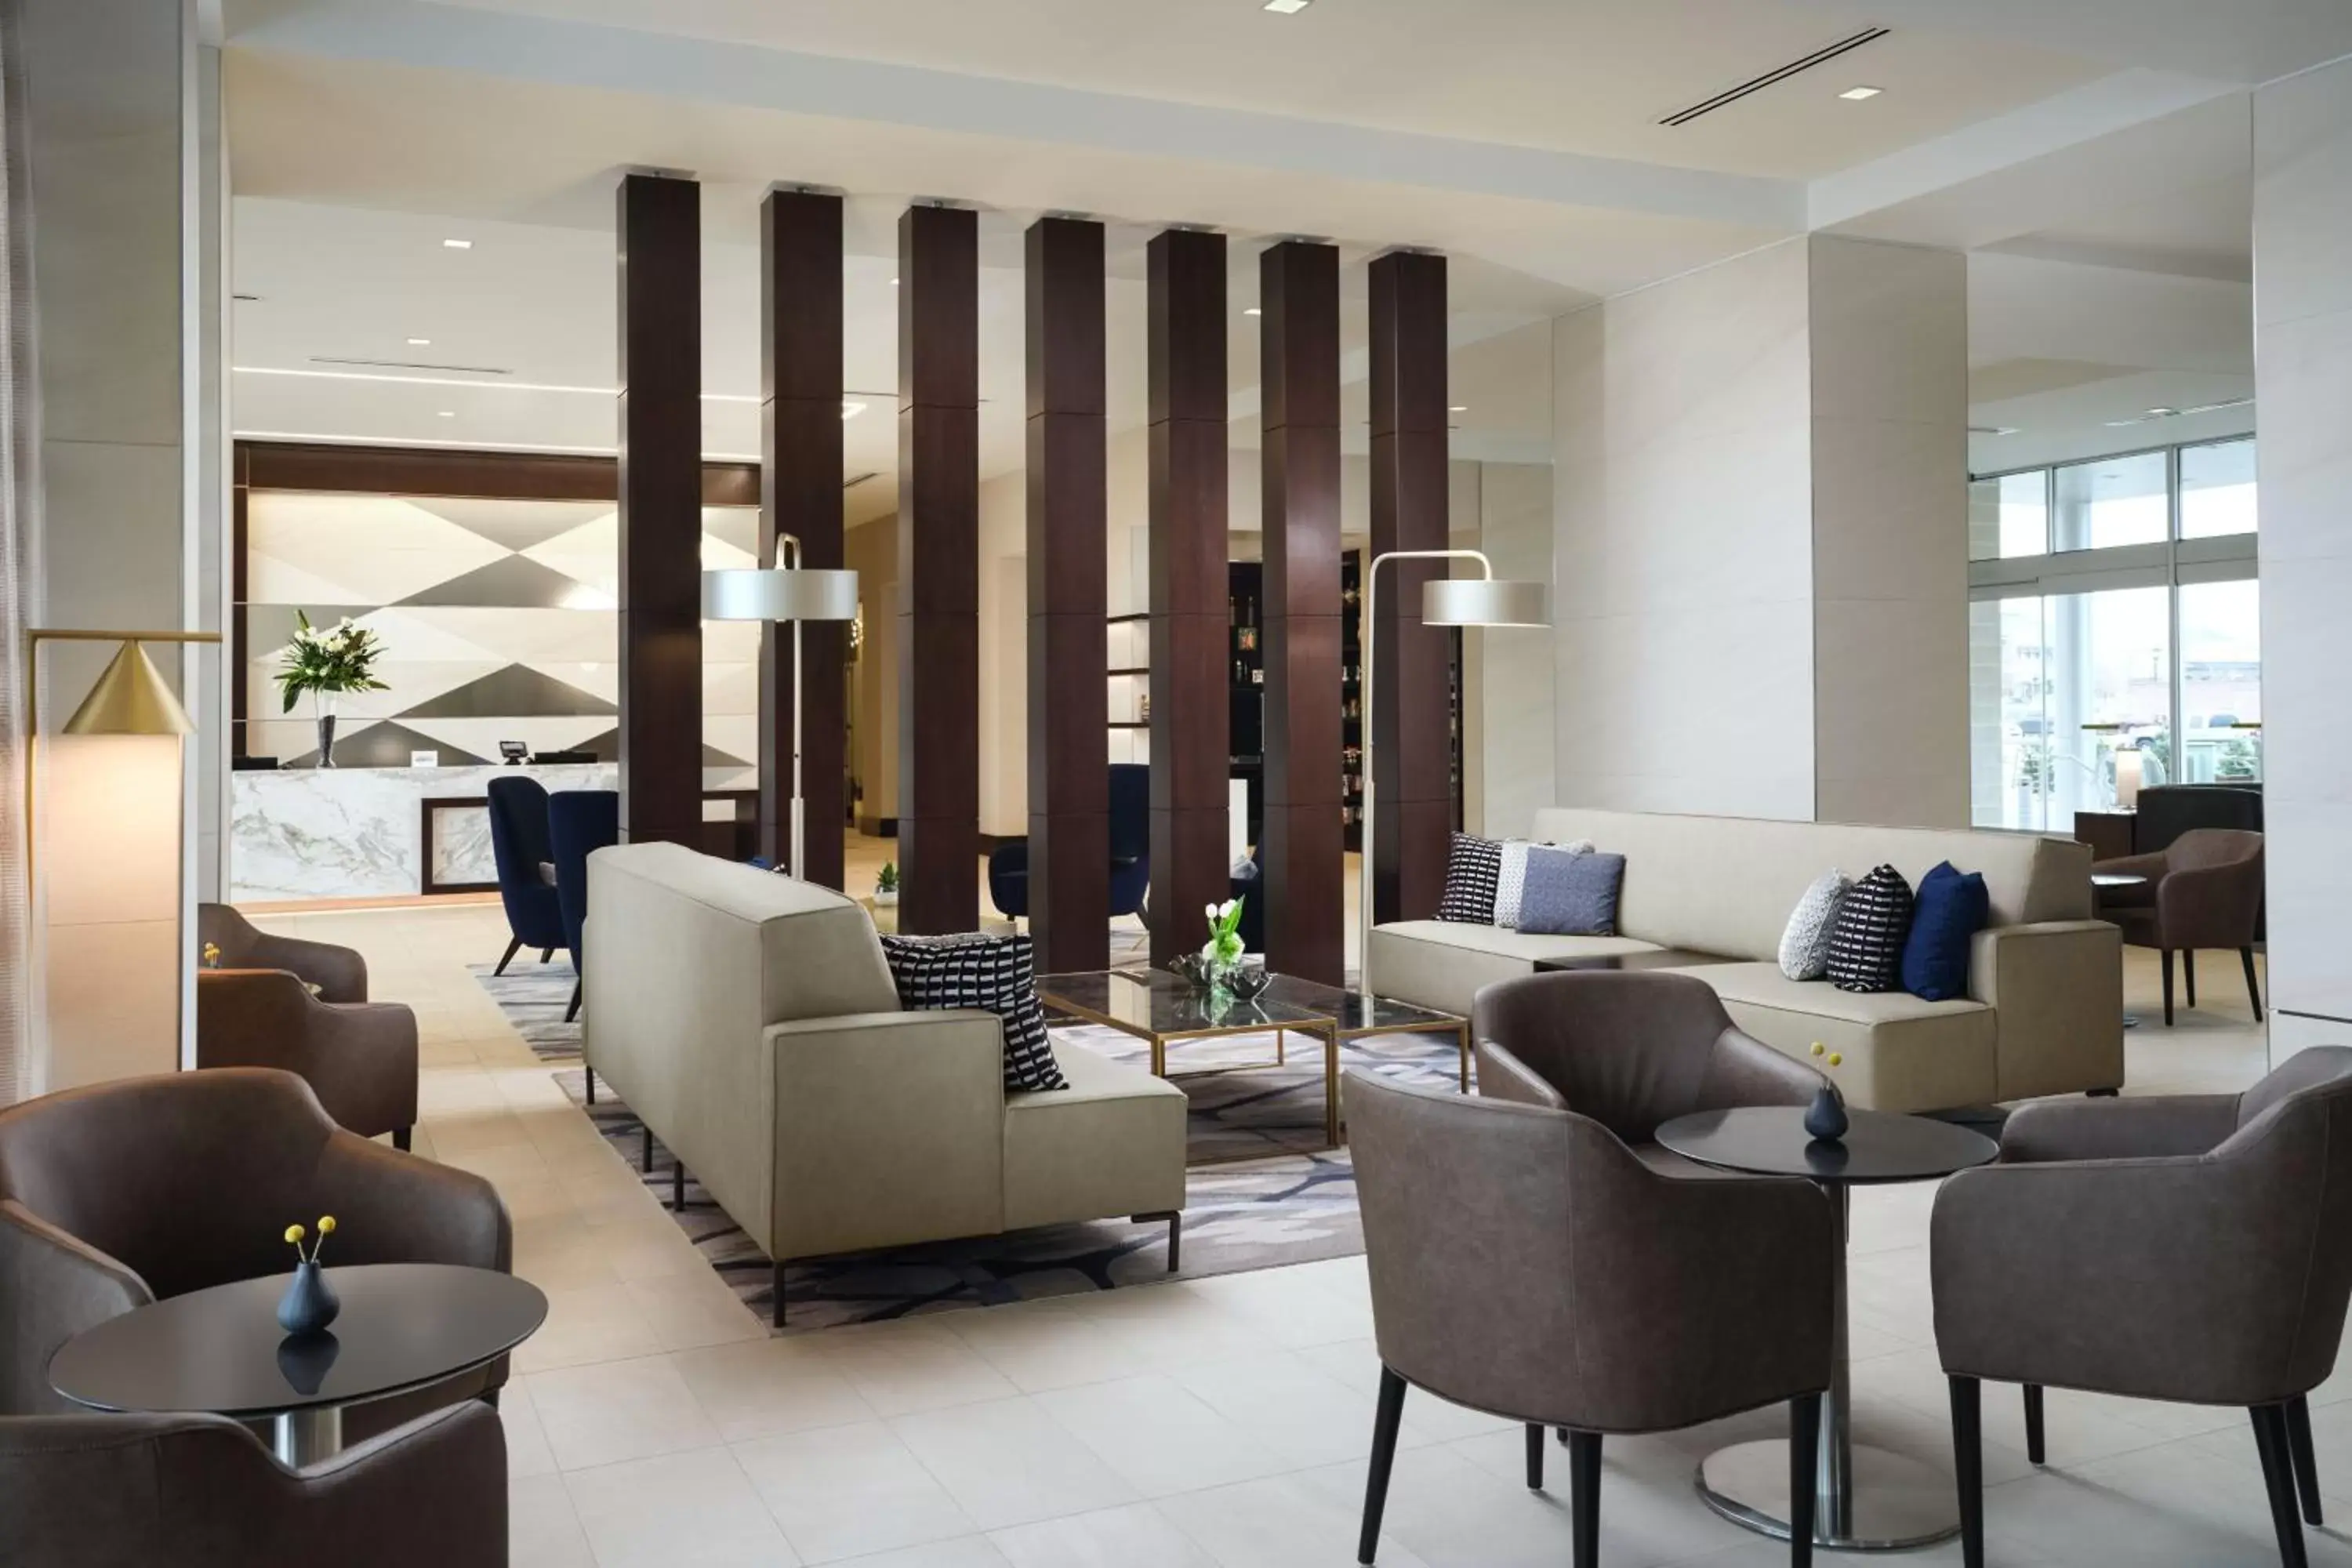 Lobby or reception in AC Hotel by Marriott Jackson Ridgeland